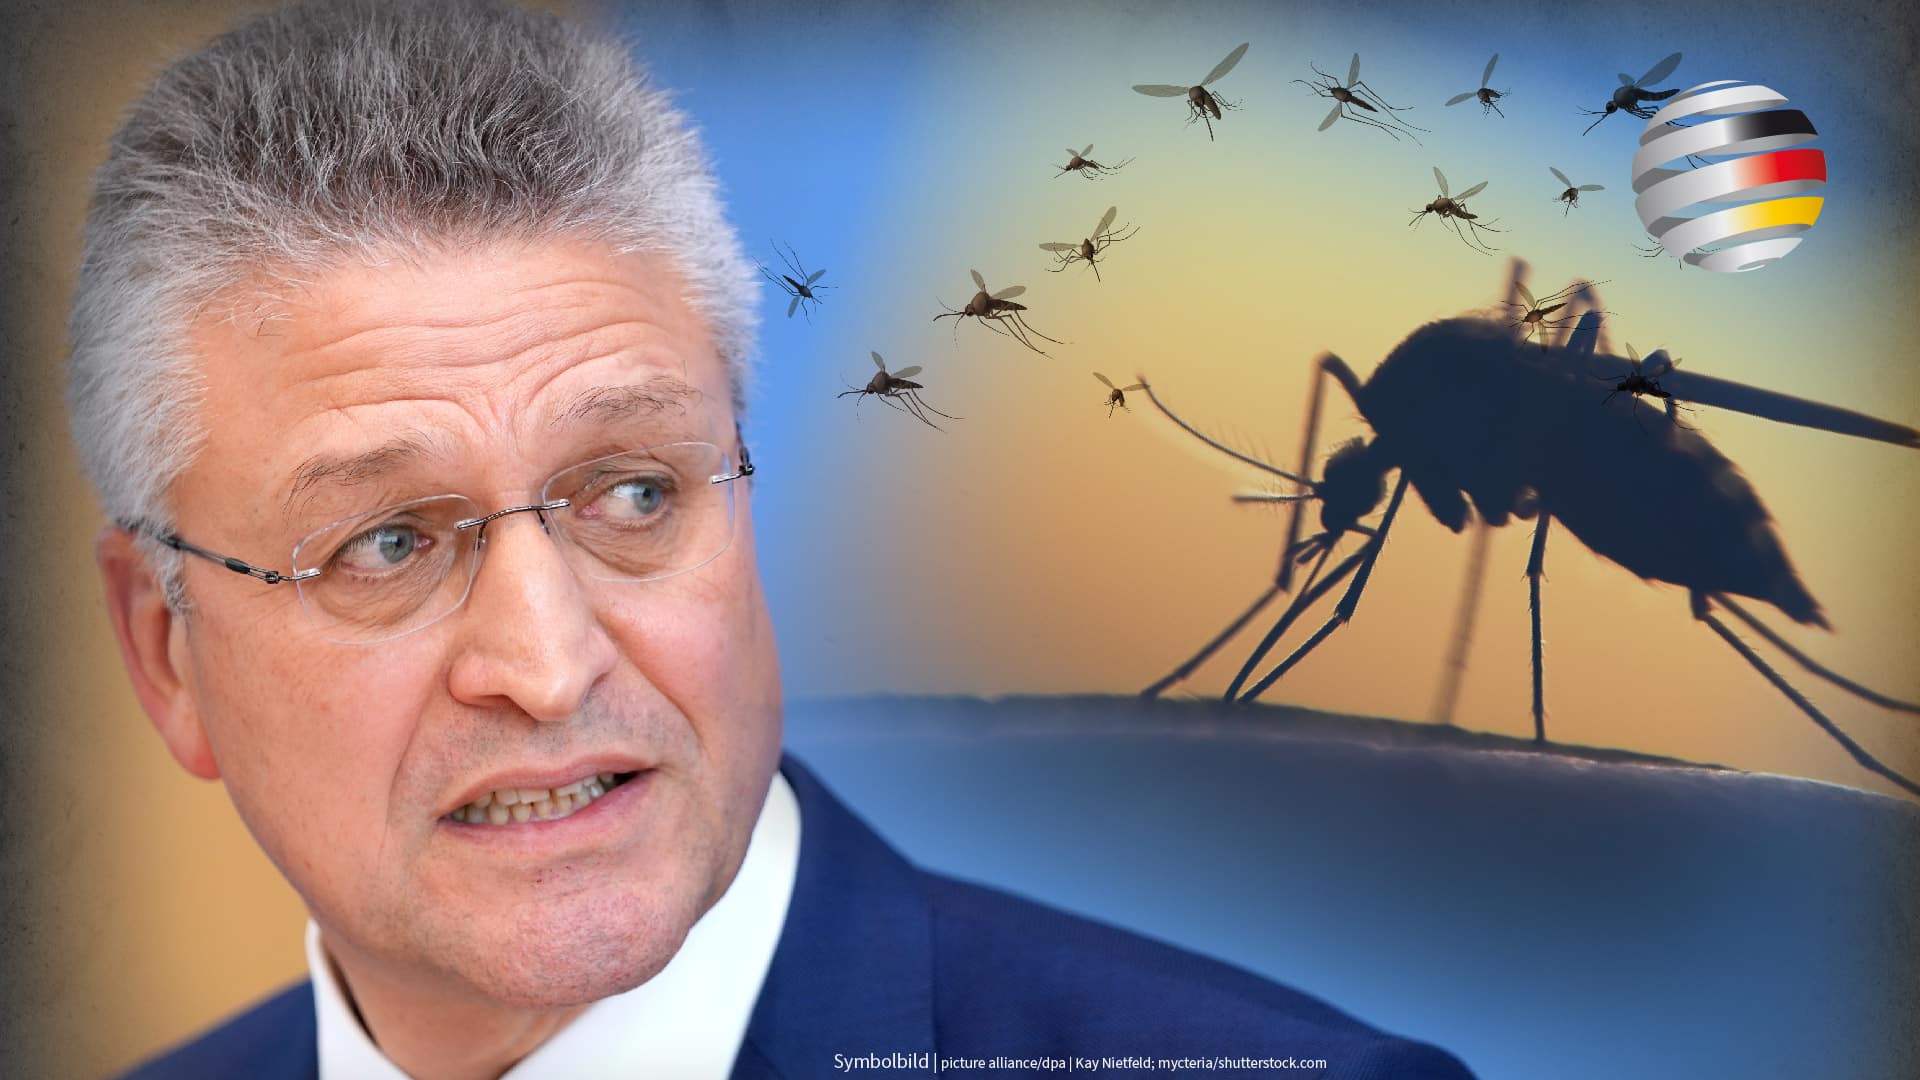 klima-hysterie:-rki-chef-wieler-warnt-vor-malaria-in-deutschland